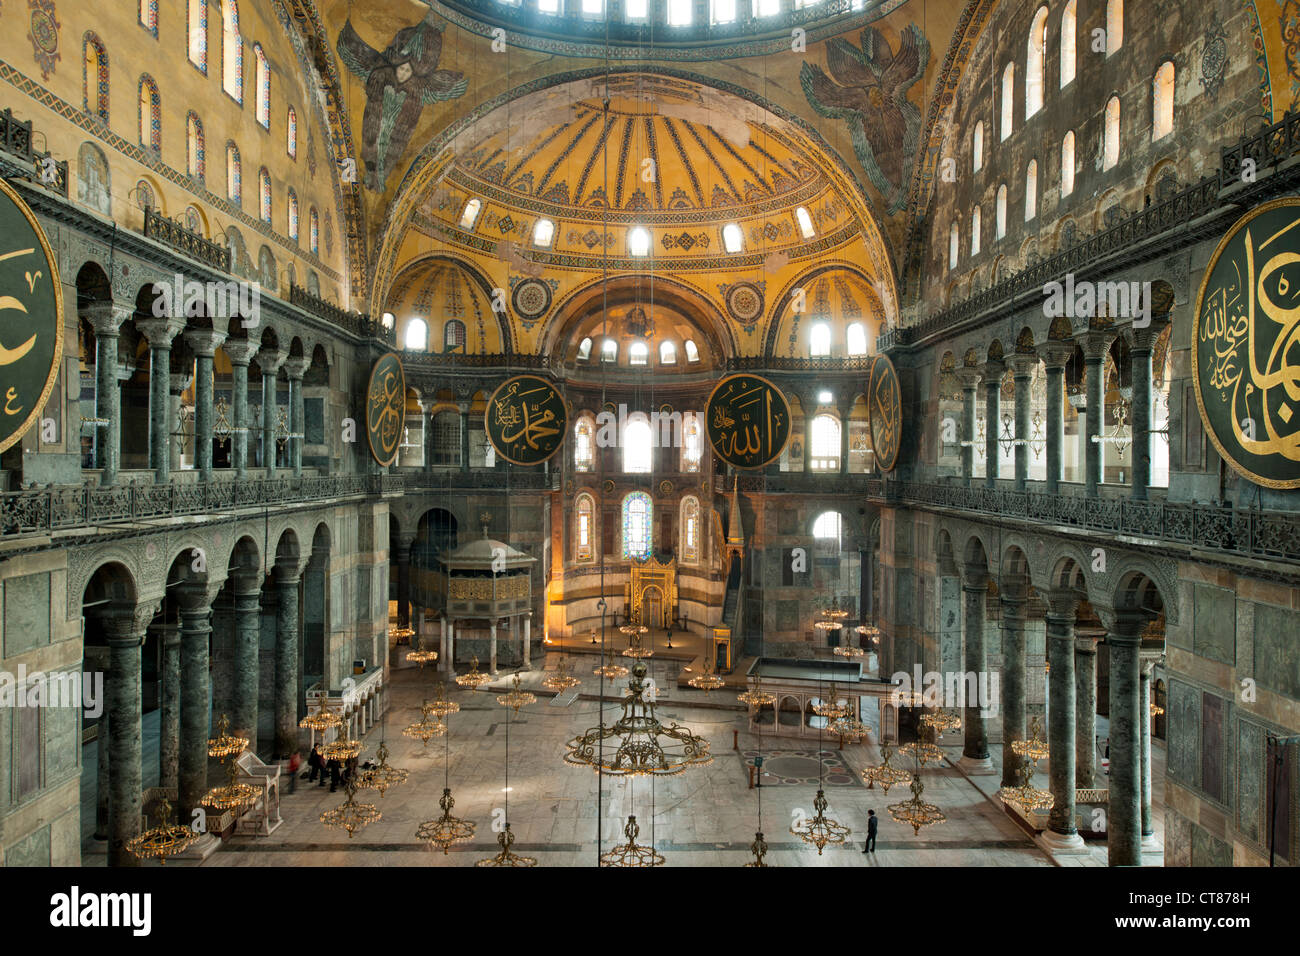 Turquie, Istanbul, Sultanahmet, Hagia Sophia oder Sophienkirche, eine éhemalige Kirche, spätere Moschee und heute ein Museum. Banque D'Images